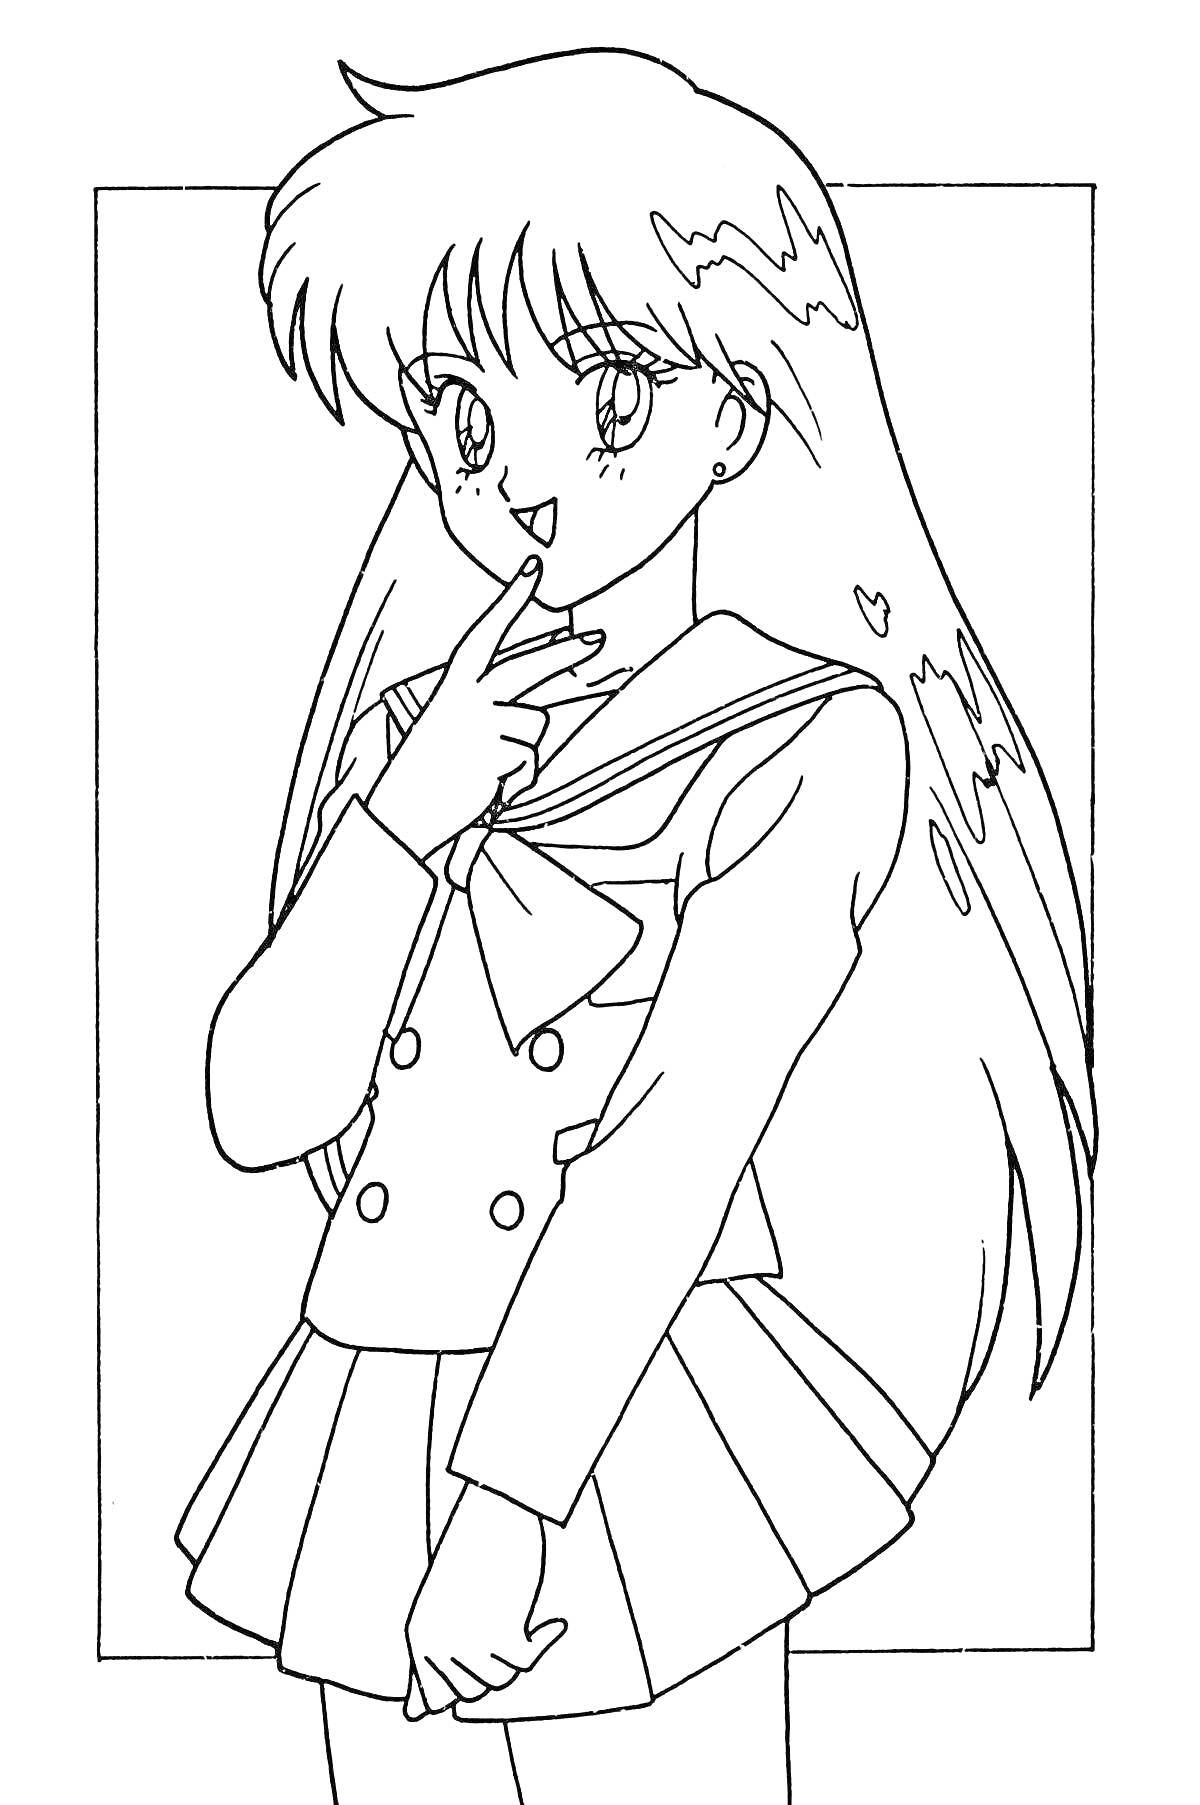 Раскраска Девочка-аниме в форме школьницы с длинными волосами и бантом на груди